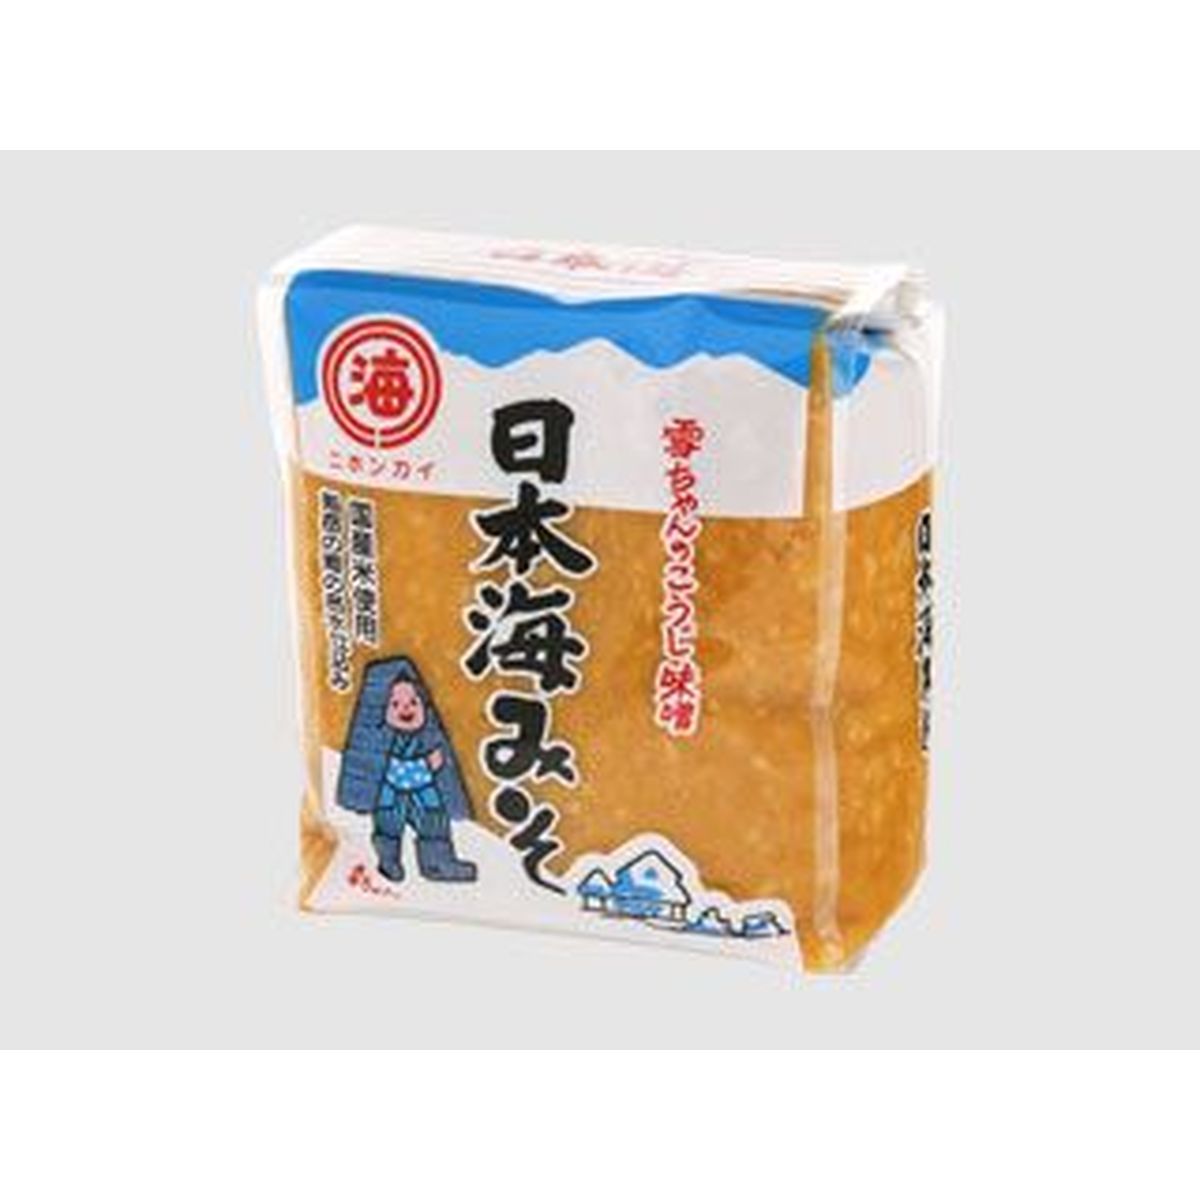 【10個入リ】日本海味噌 雪チャン ガゼット 1Kg